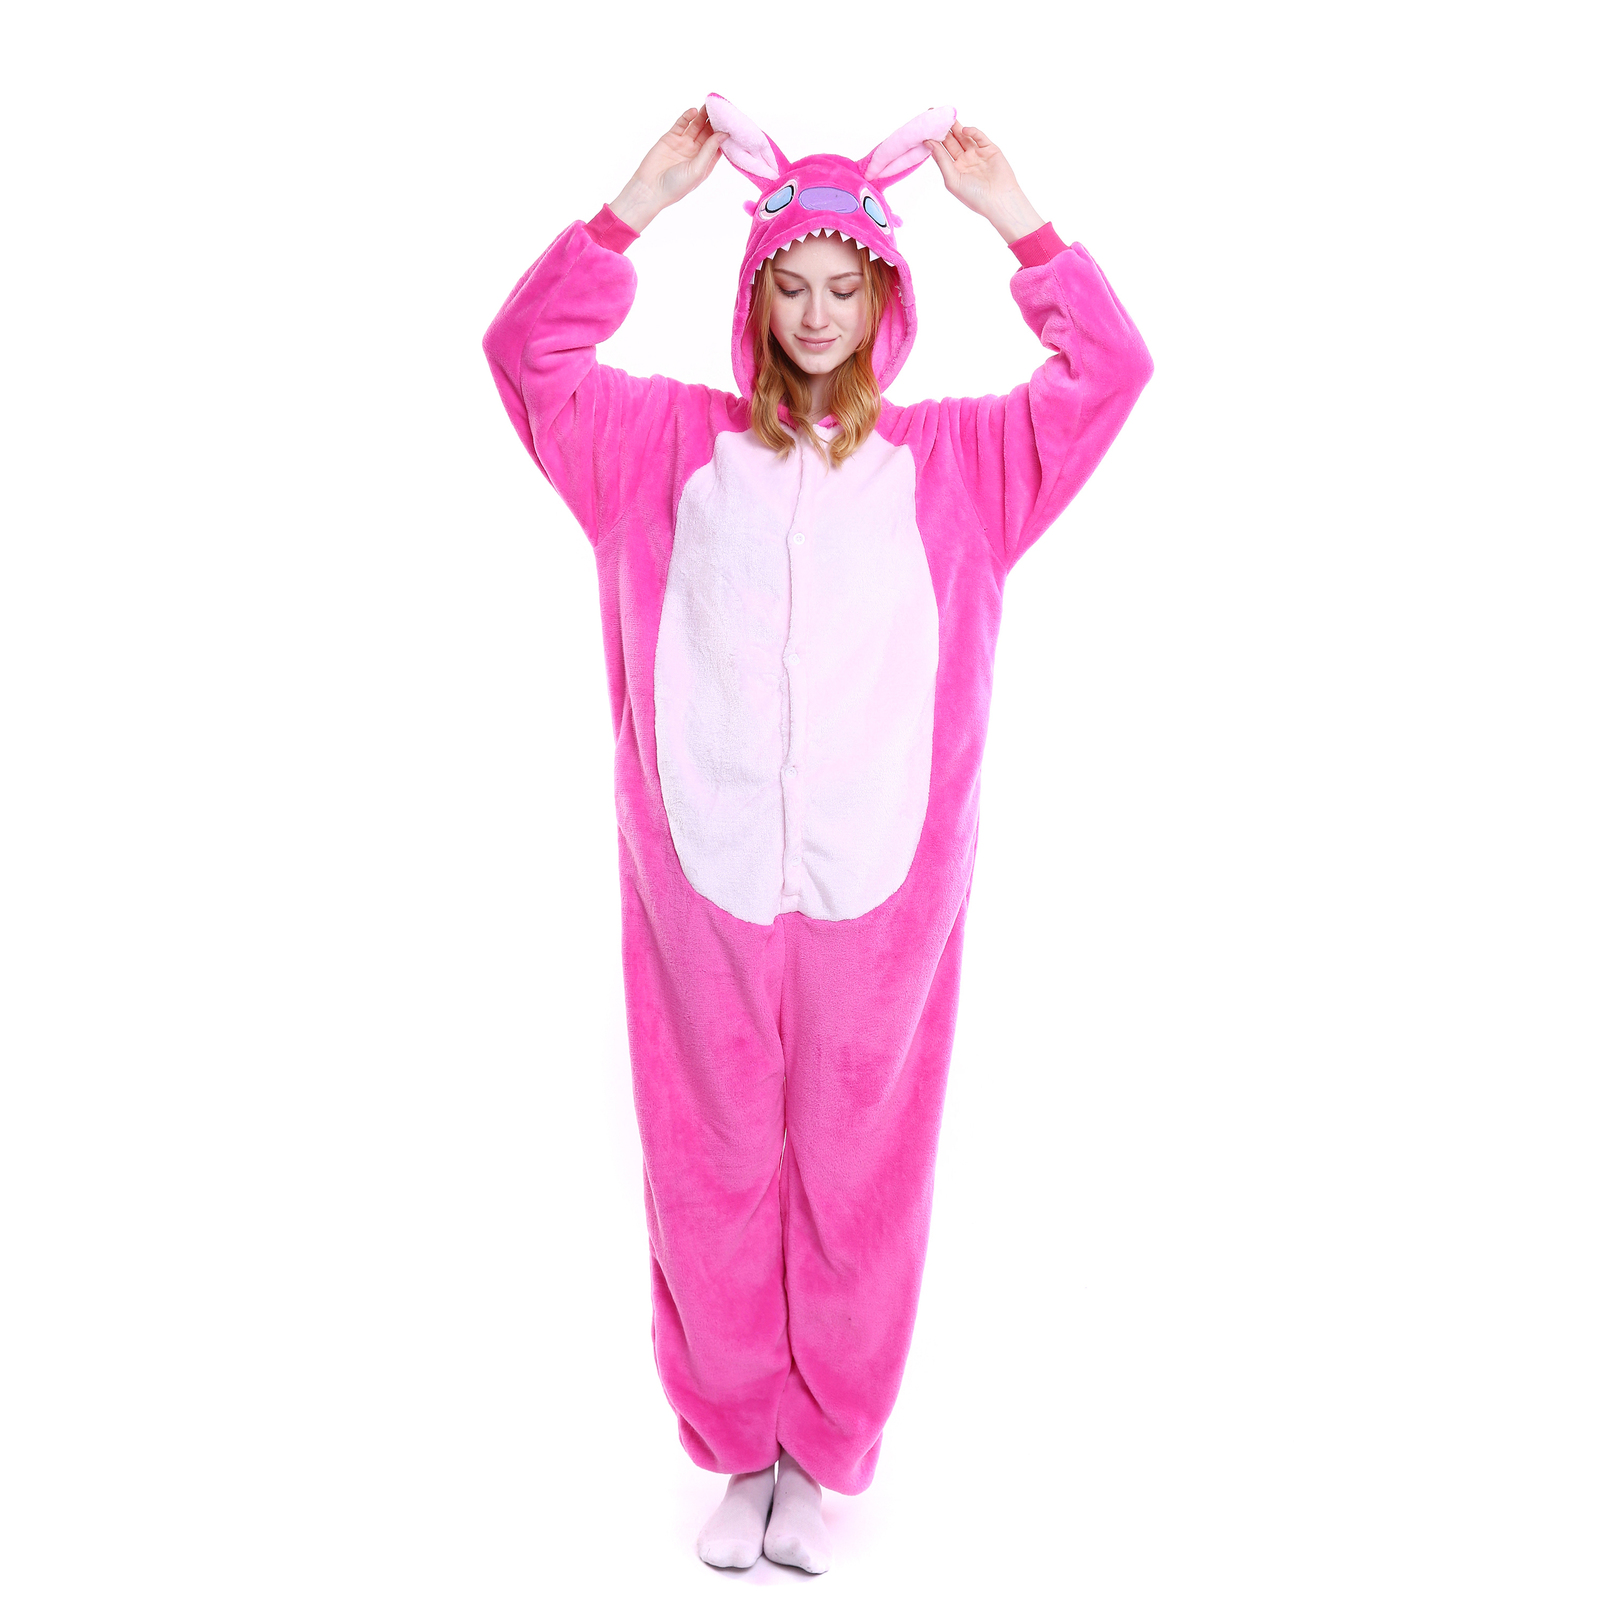 Cosplay Adult Kigurumi Animal Onesies Jumpsuit Costume Pajamas Pink Stitch